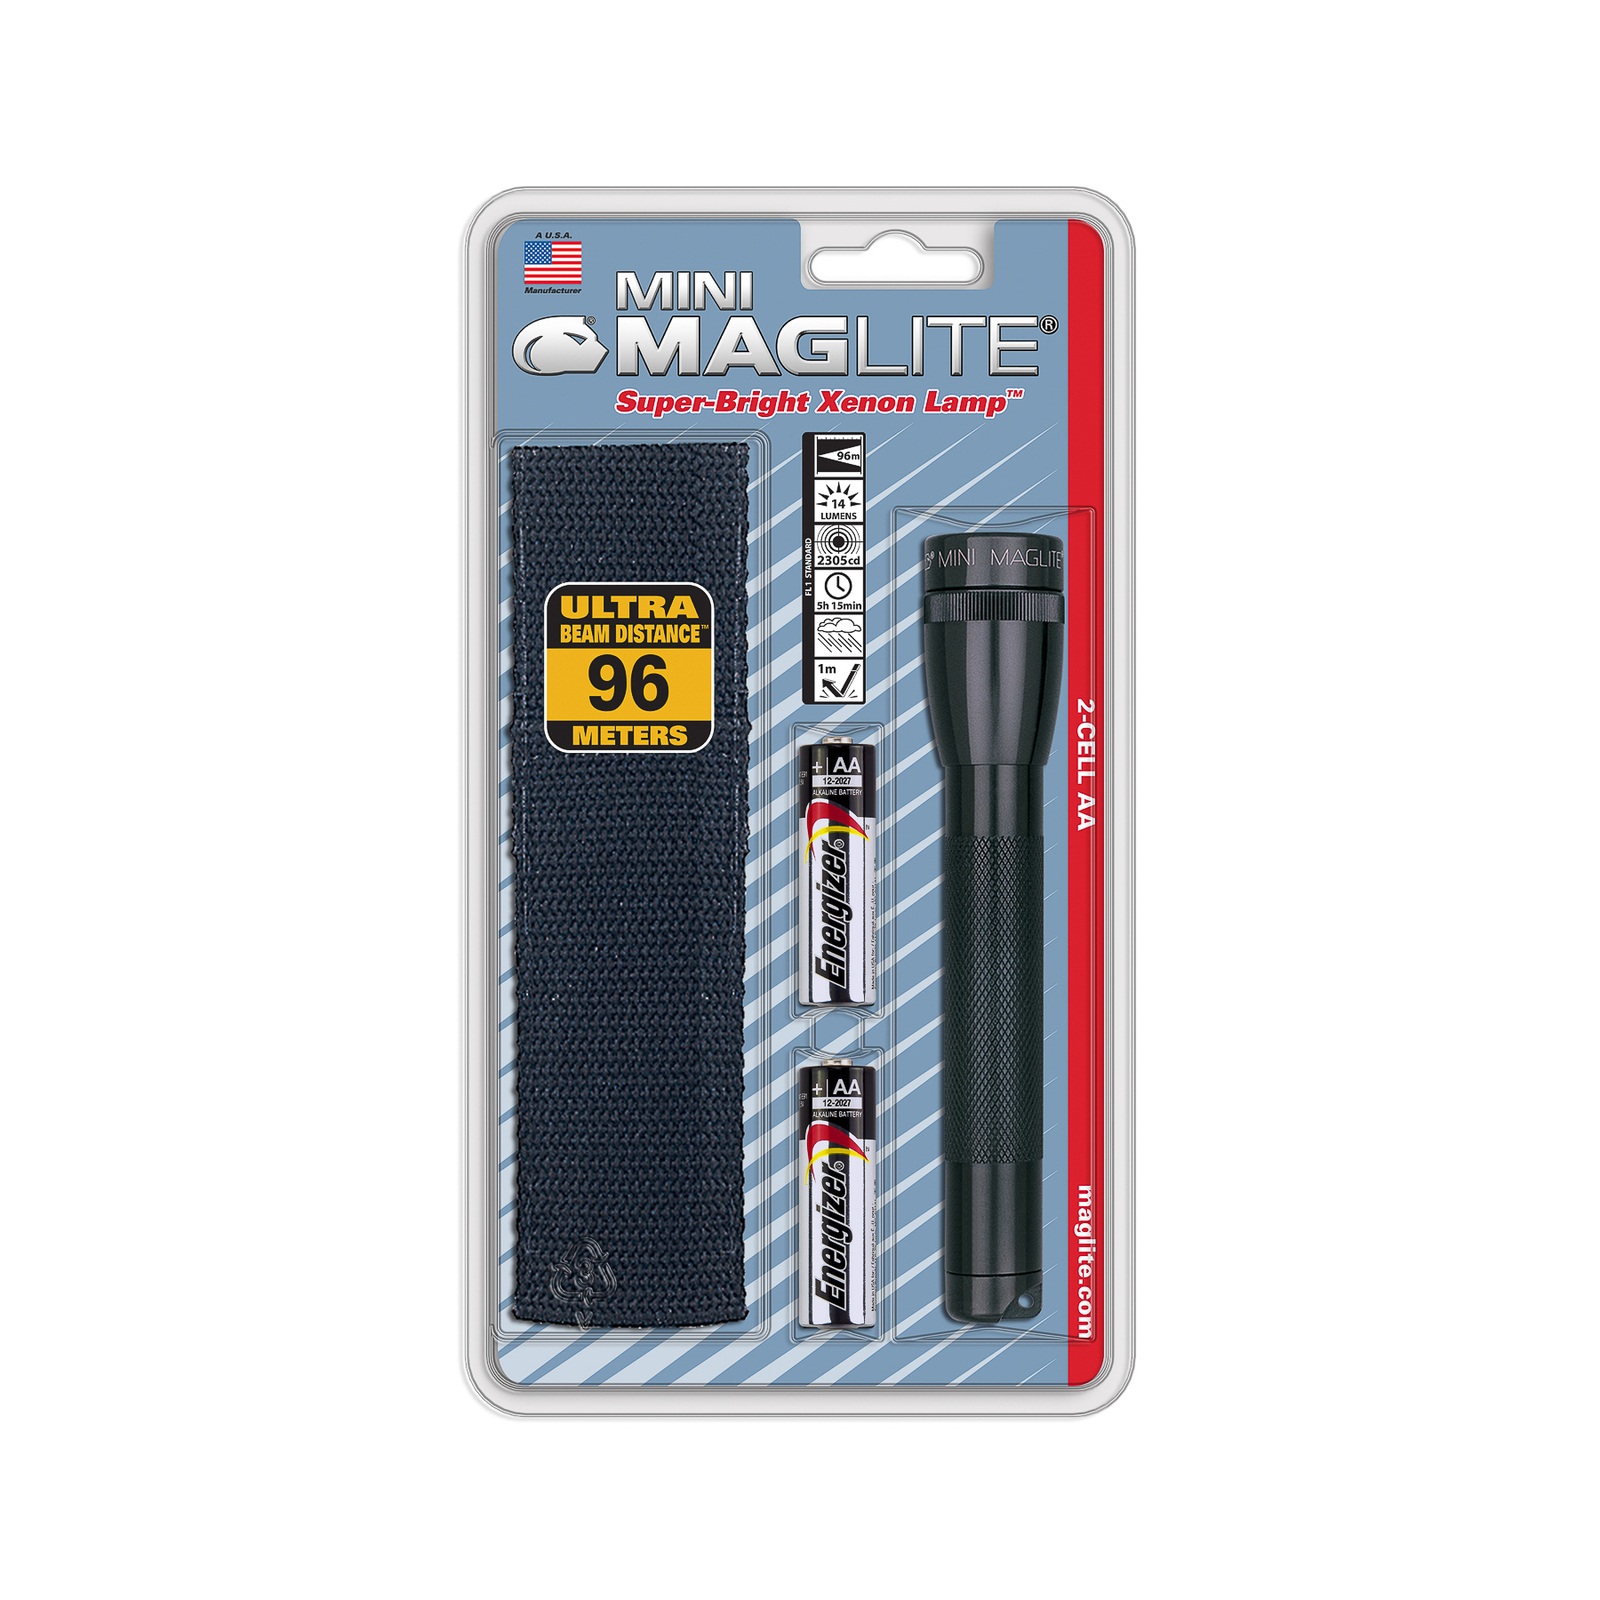 Maglite lampe de poche au xénon Mini, 2-Cell AA, étui, noir